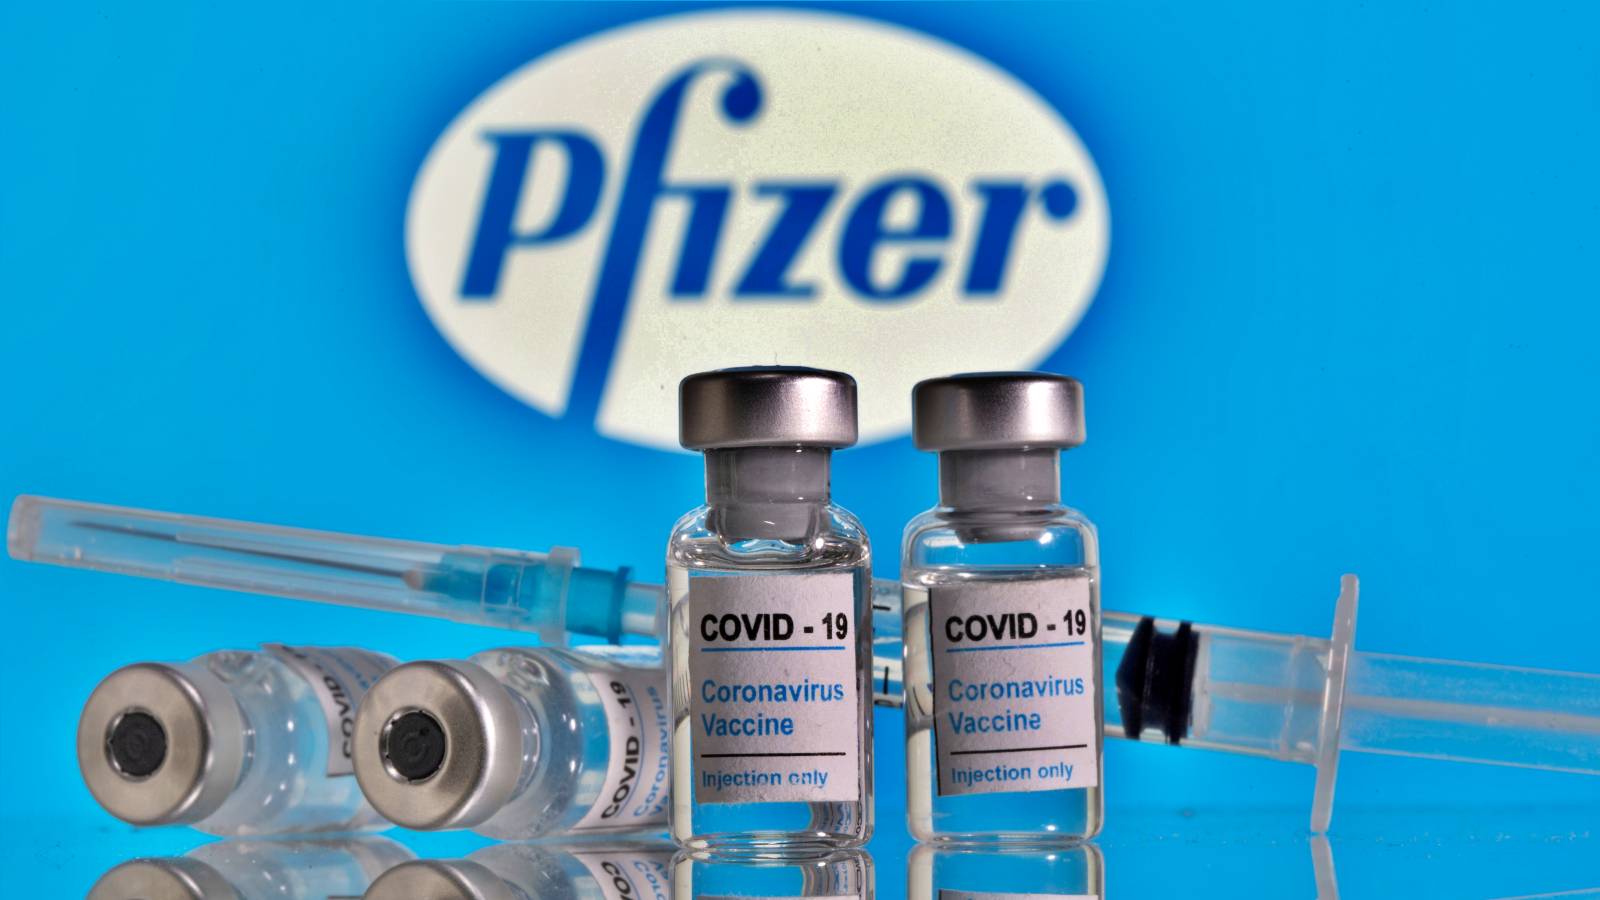 964.080 XNUMX doser av pfizer biontech-vaccin nådde Rumänien